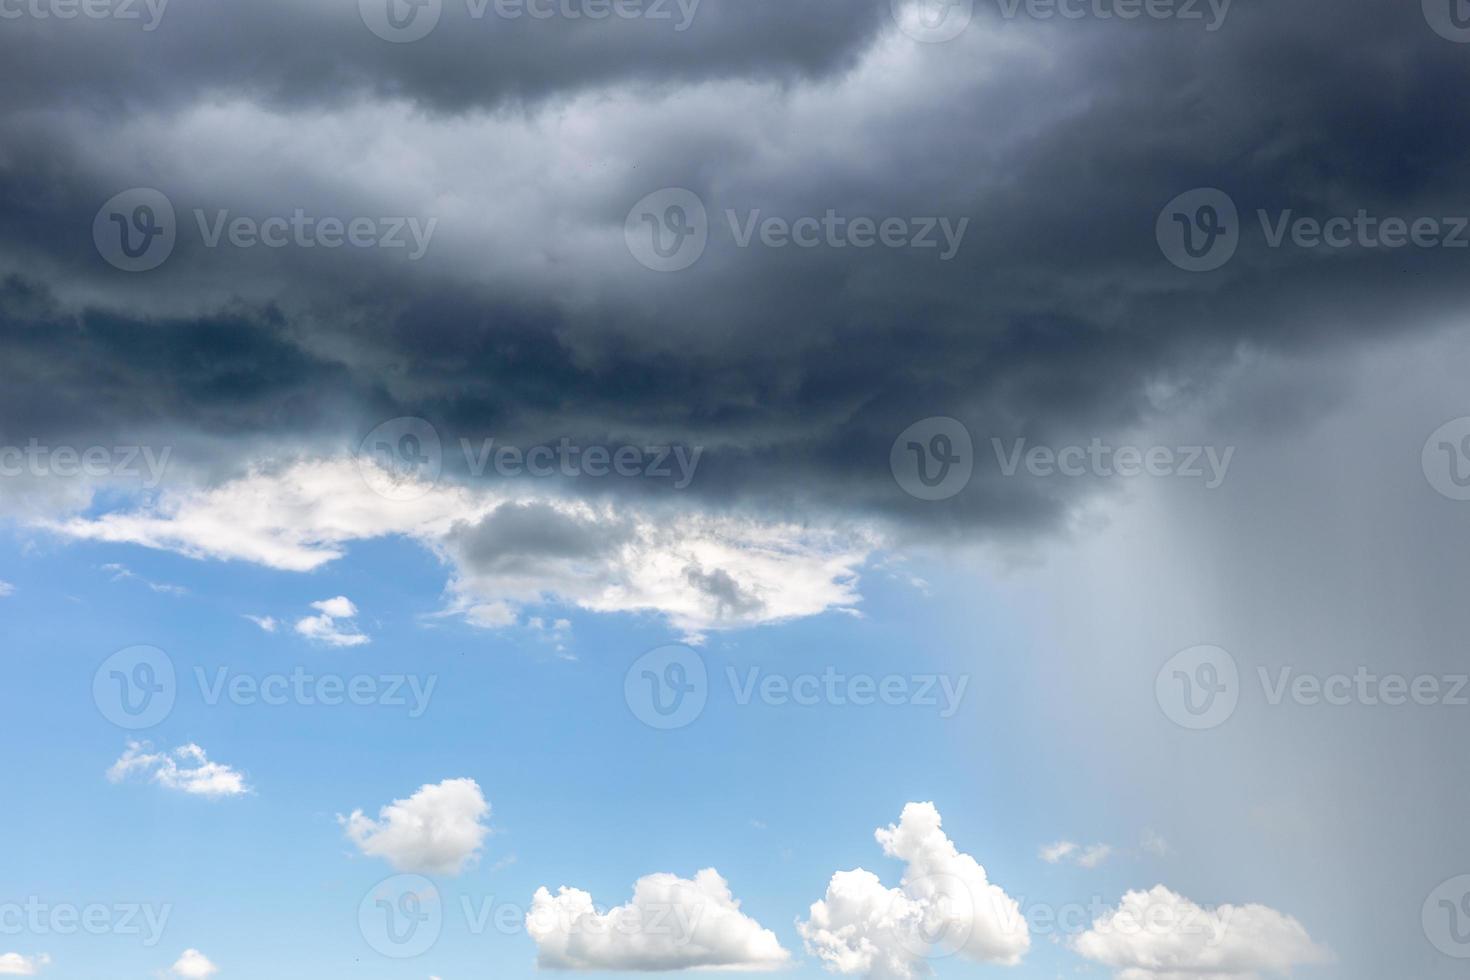 nuvem de chuva. mudança de clima. diferentes situações climáticas em uma única imagem. foto